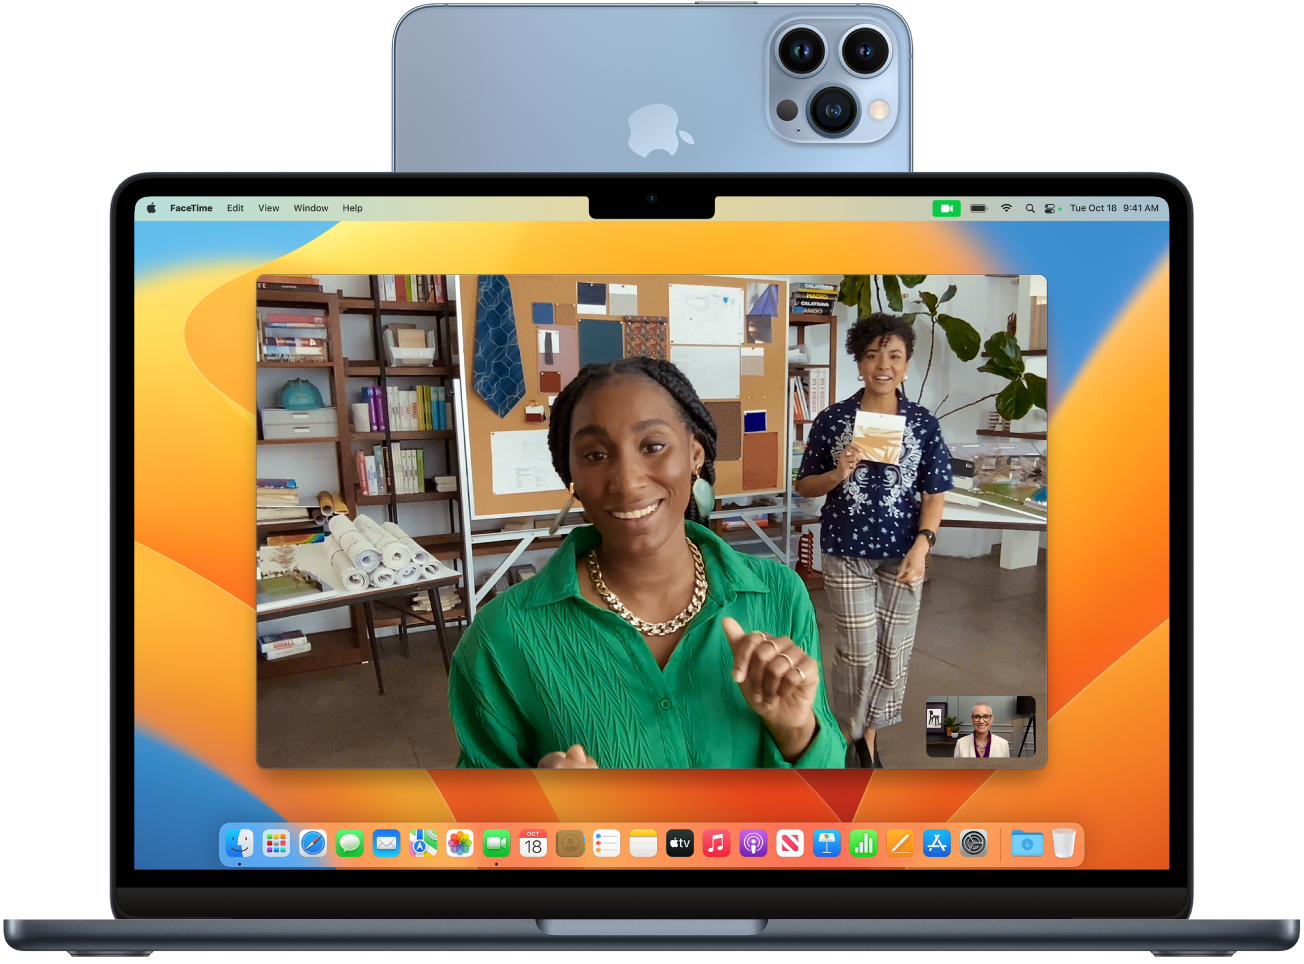 Një kompjuter Mac me një iPhone që po përdoret si një kamerë uebi e montuar në krye të ekranit. Imazhi nga kamera e telefonit iPhone është i dukshëm në ekranin e Mac.